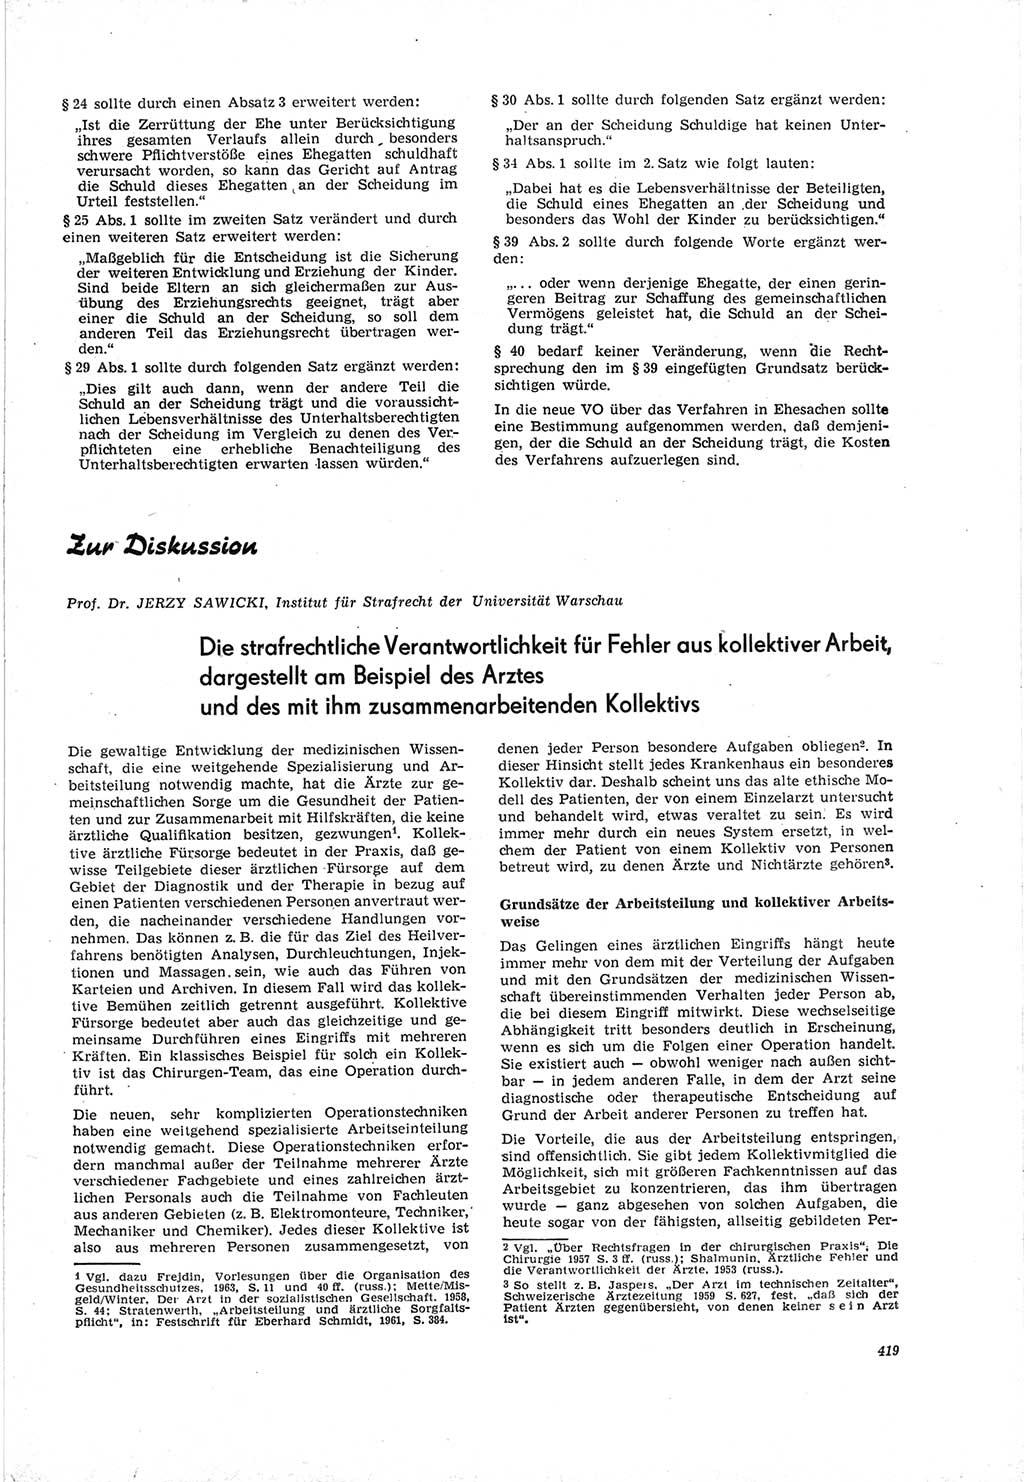 Neue Justiz (NJ), Zeitschrift für Recht und Rechtswissenschaft [Deutsche Demokratische Republik (DDR)], 19. Jahrgang 1965, Seite 419 (NJ DDR 1965, S. 419)